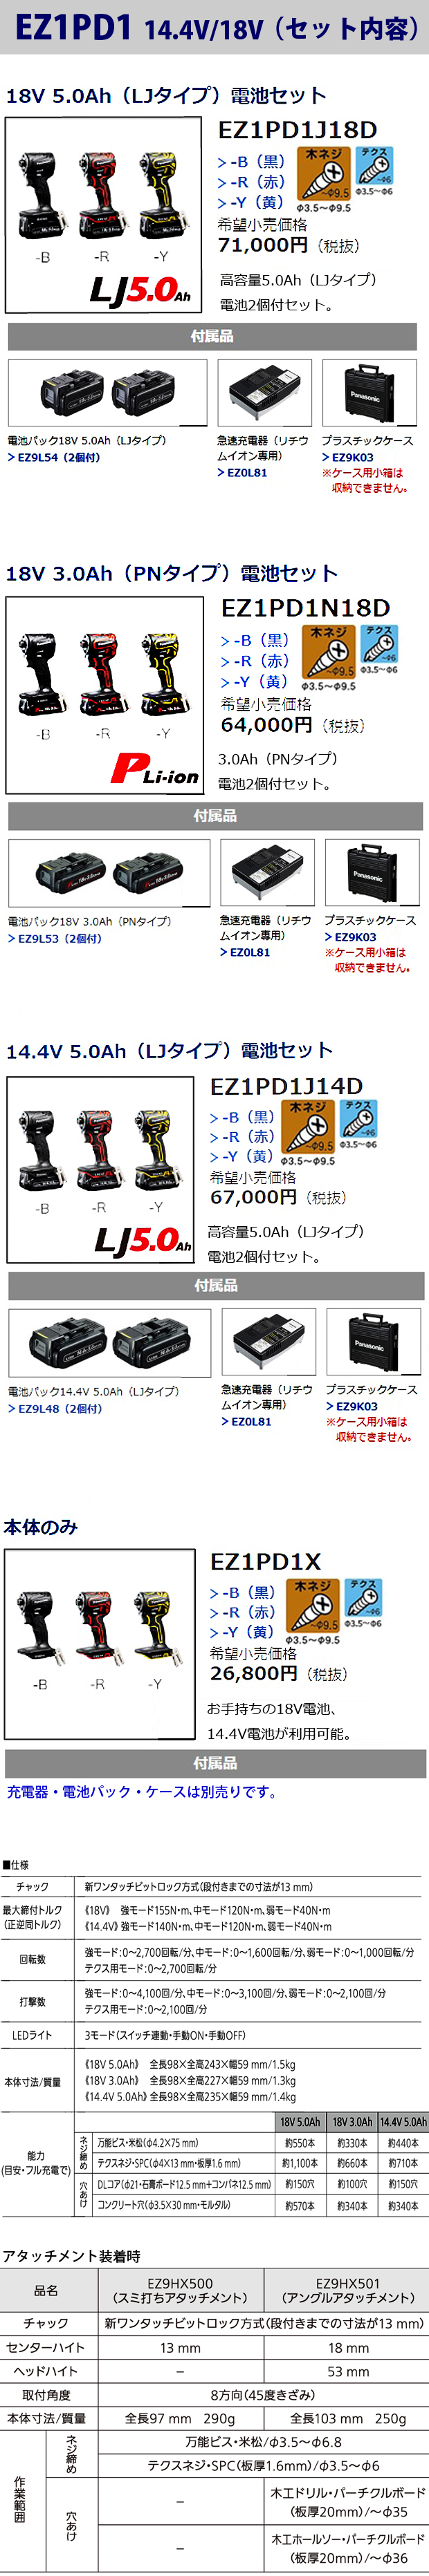 パナソニック 充電インパクトドライバー EZ1PD1 電動工具・エアー工具 